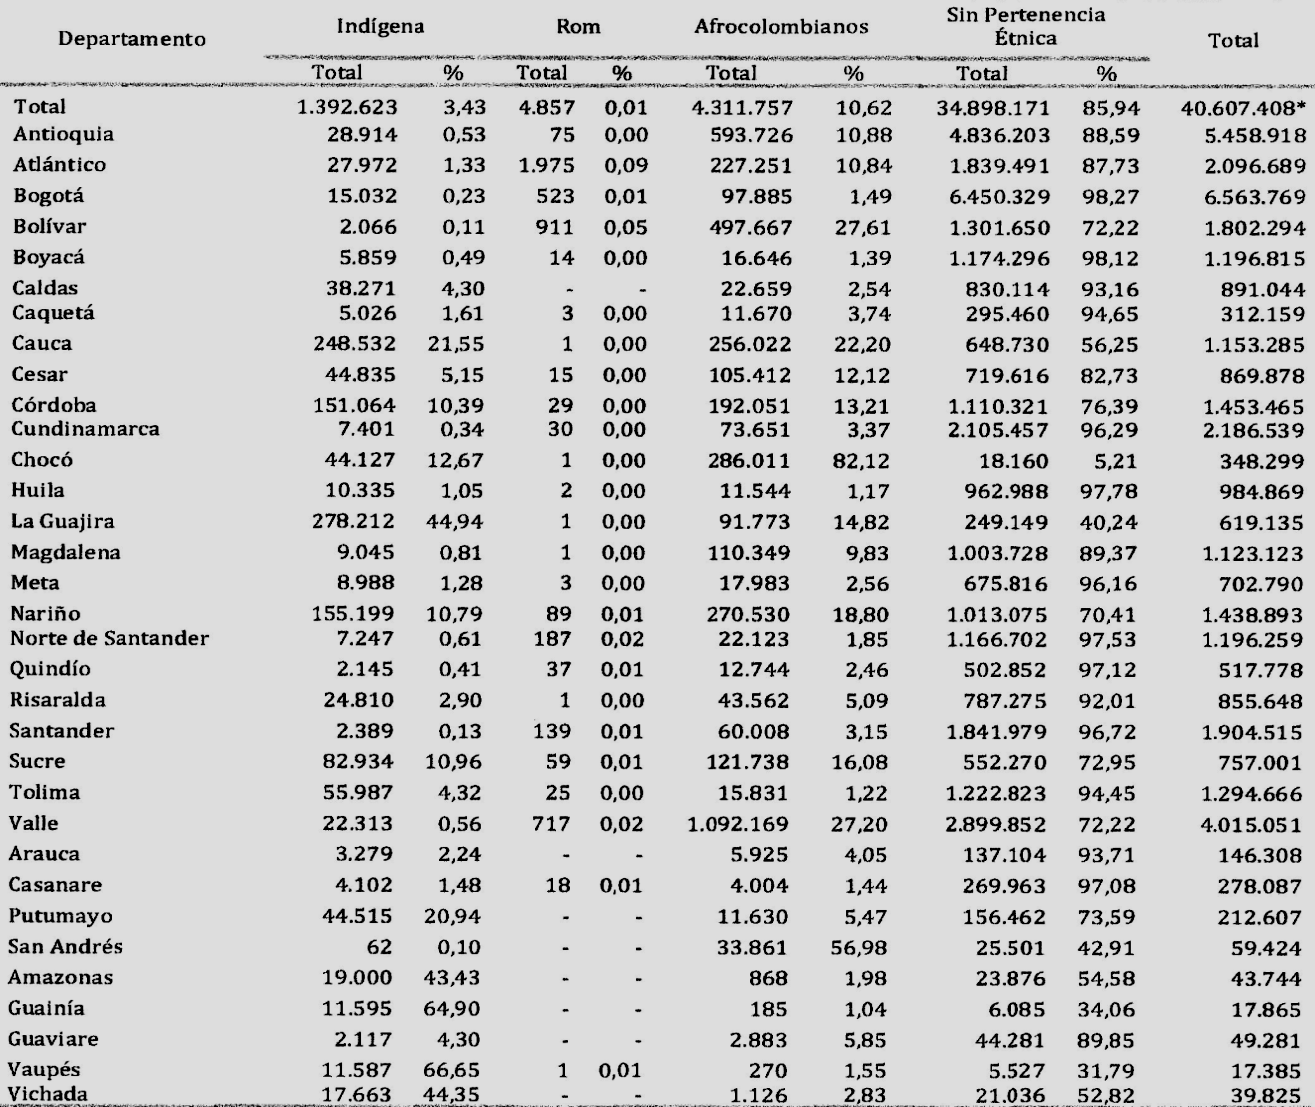 A continuación se presenta la distribución de la población predominante afro-colombiana, indígena y gitana por departamento, según